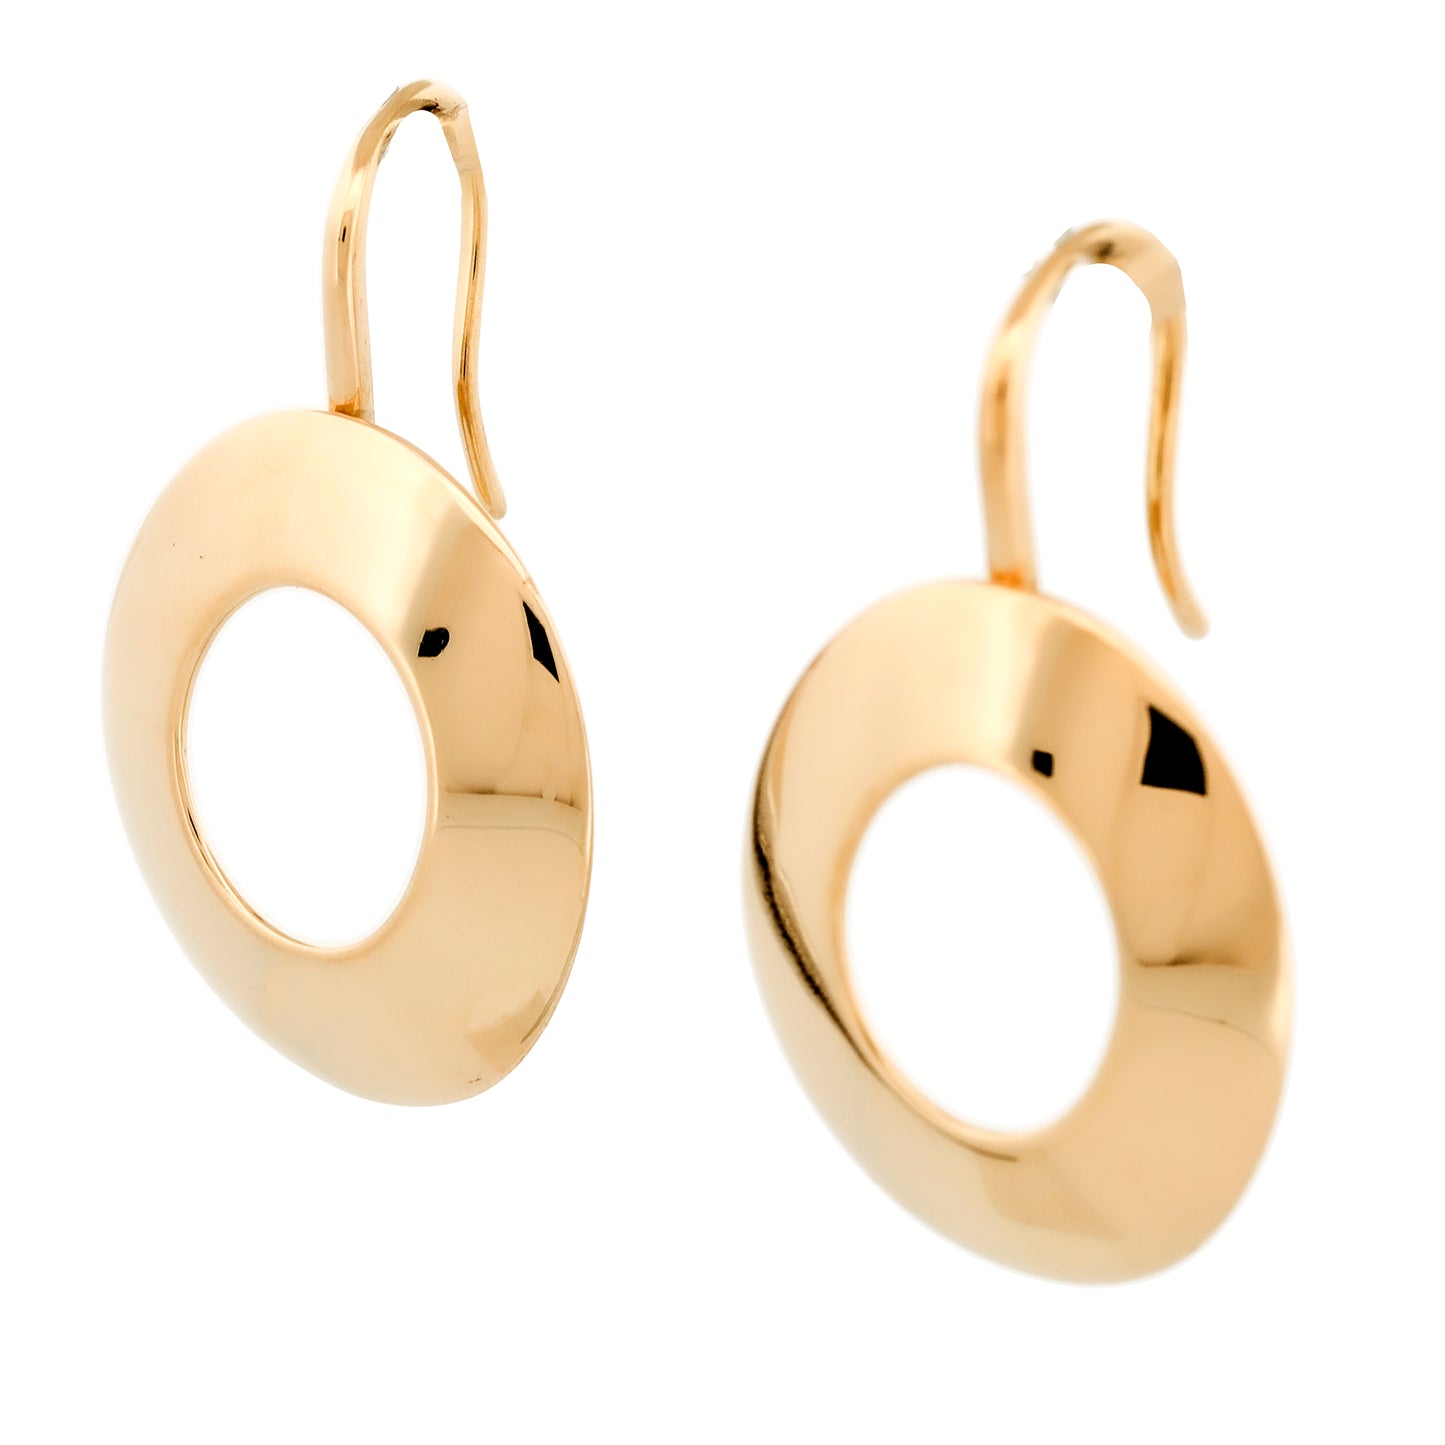 Tiffany & Co. Frank Gehry Morph Dangle Hook Earrings in 18k Yellow Gold